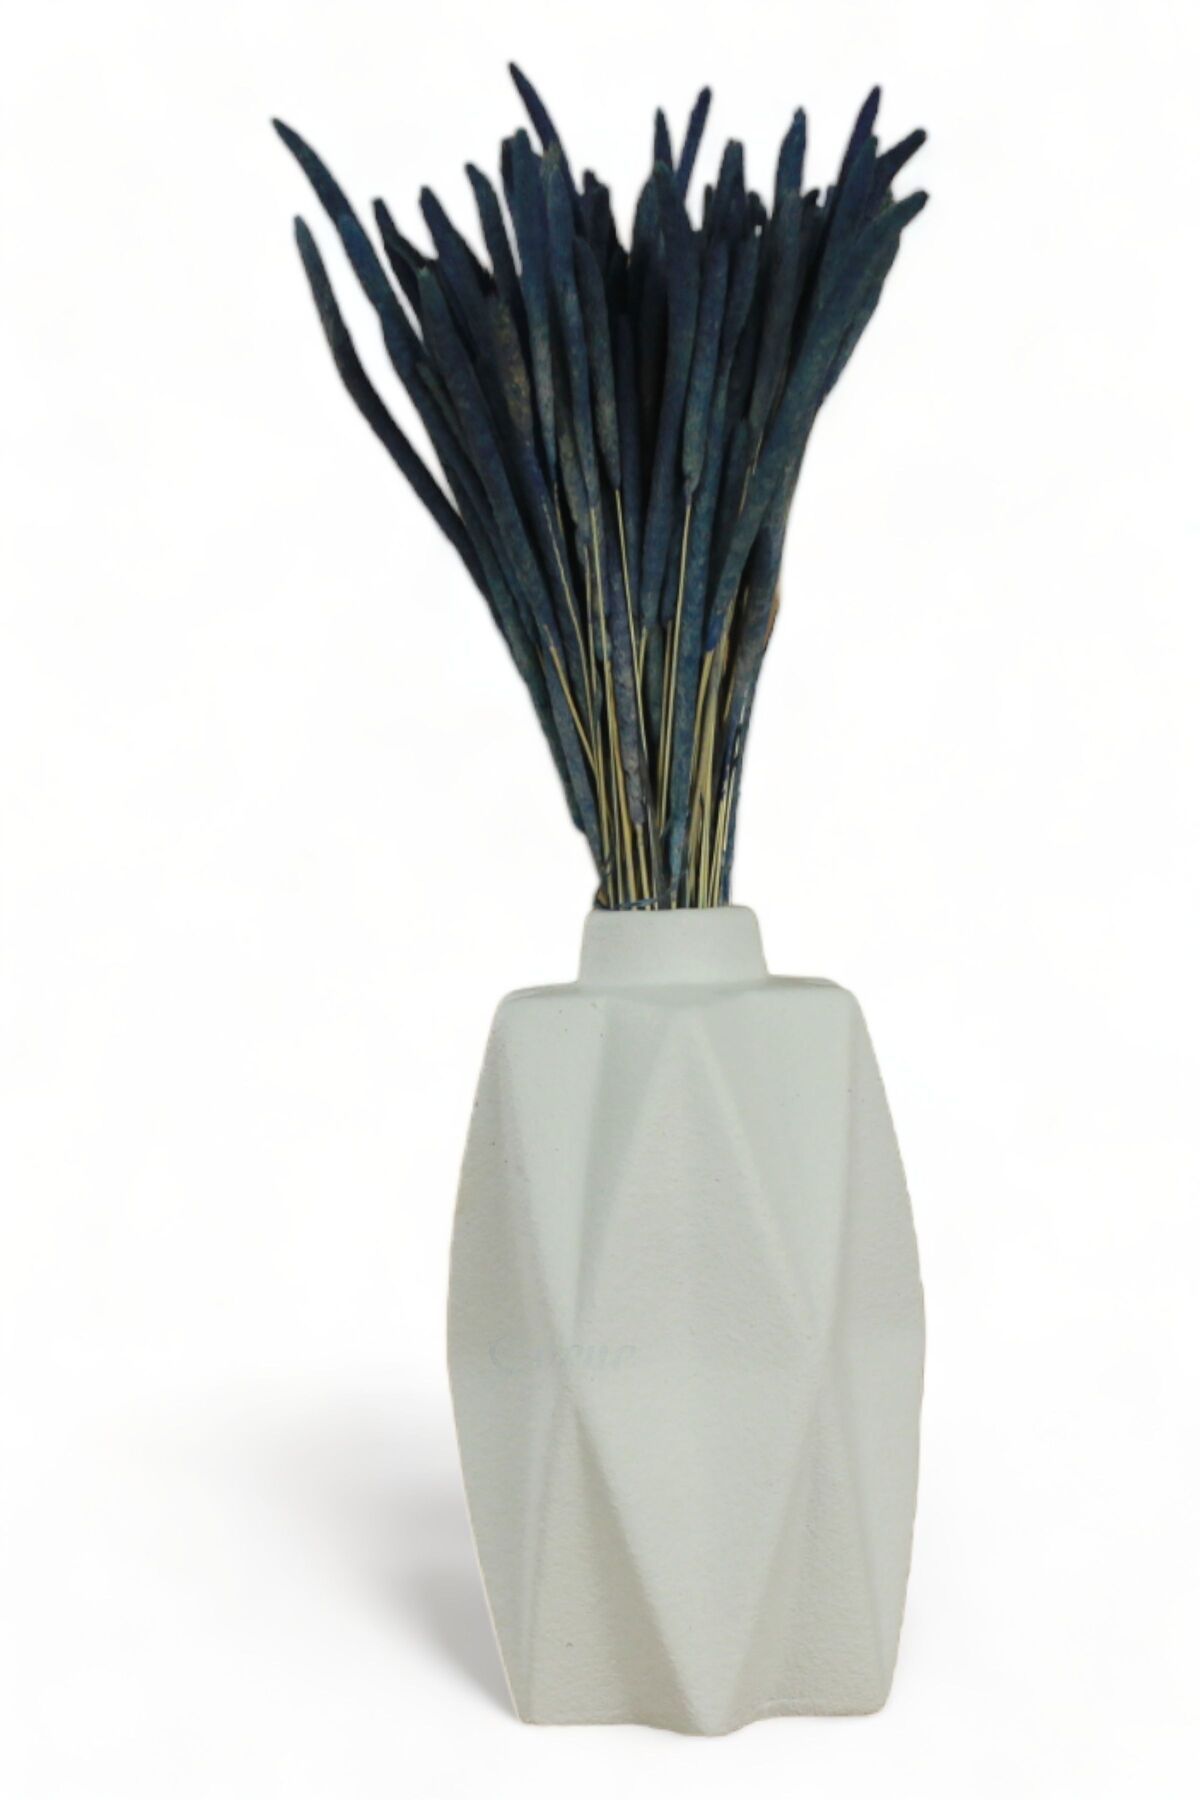 Evene Vazo Küçük Vazo Masa Üstü Vazo Ev Dekorasyon Vazo Model 21